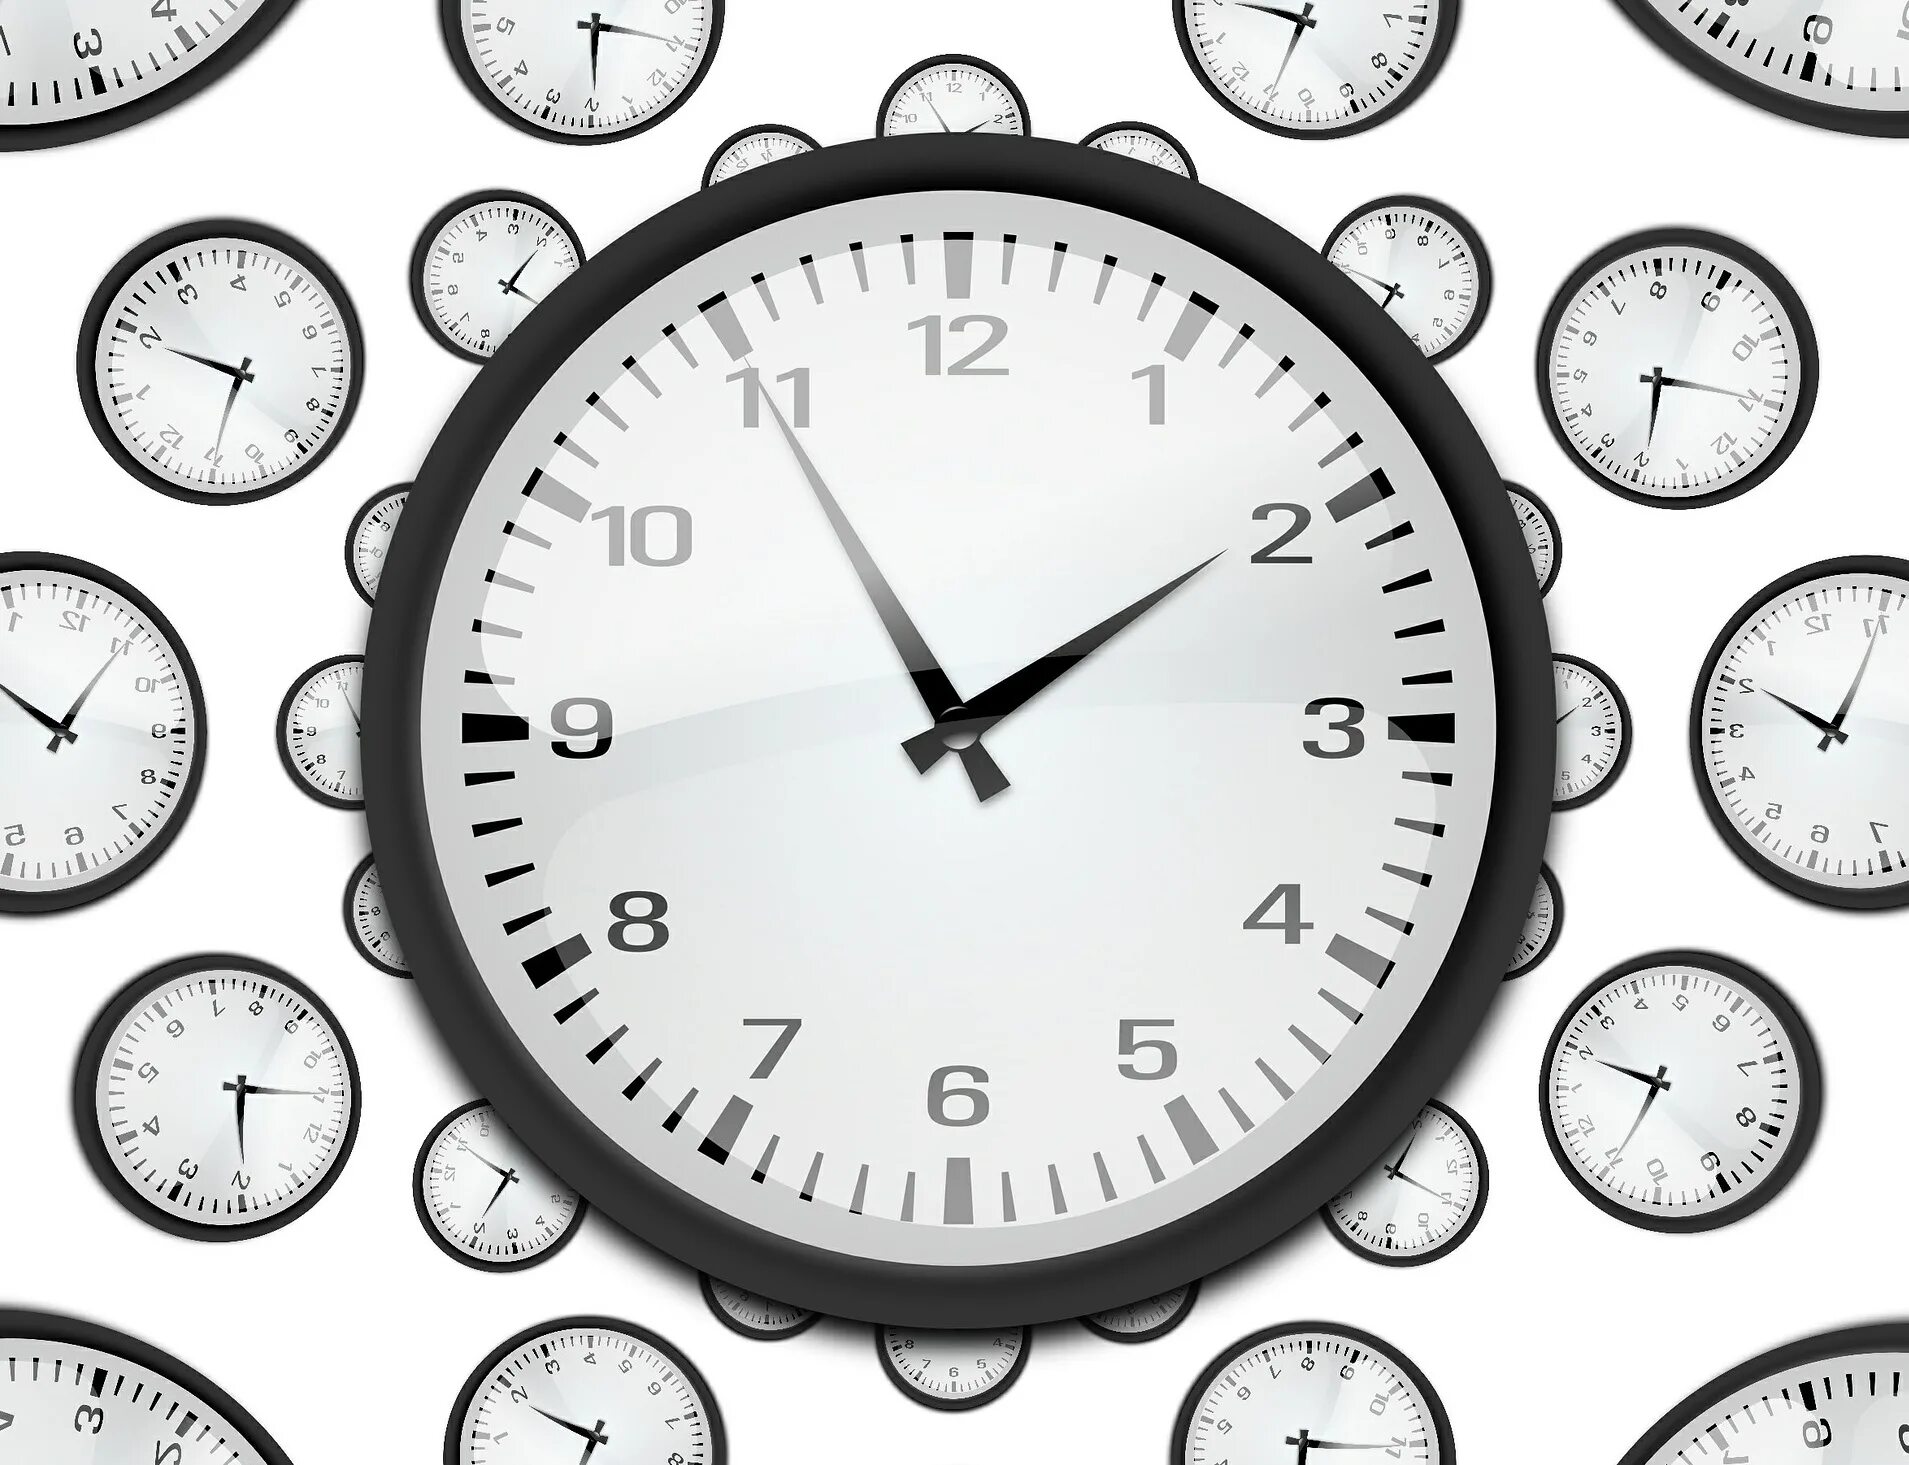 Изображение часов. Часы на белом фоне. Часы 8 утра. Часы 8 часов.